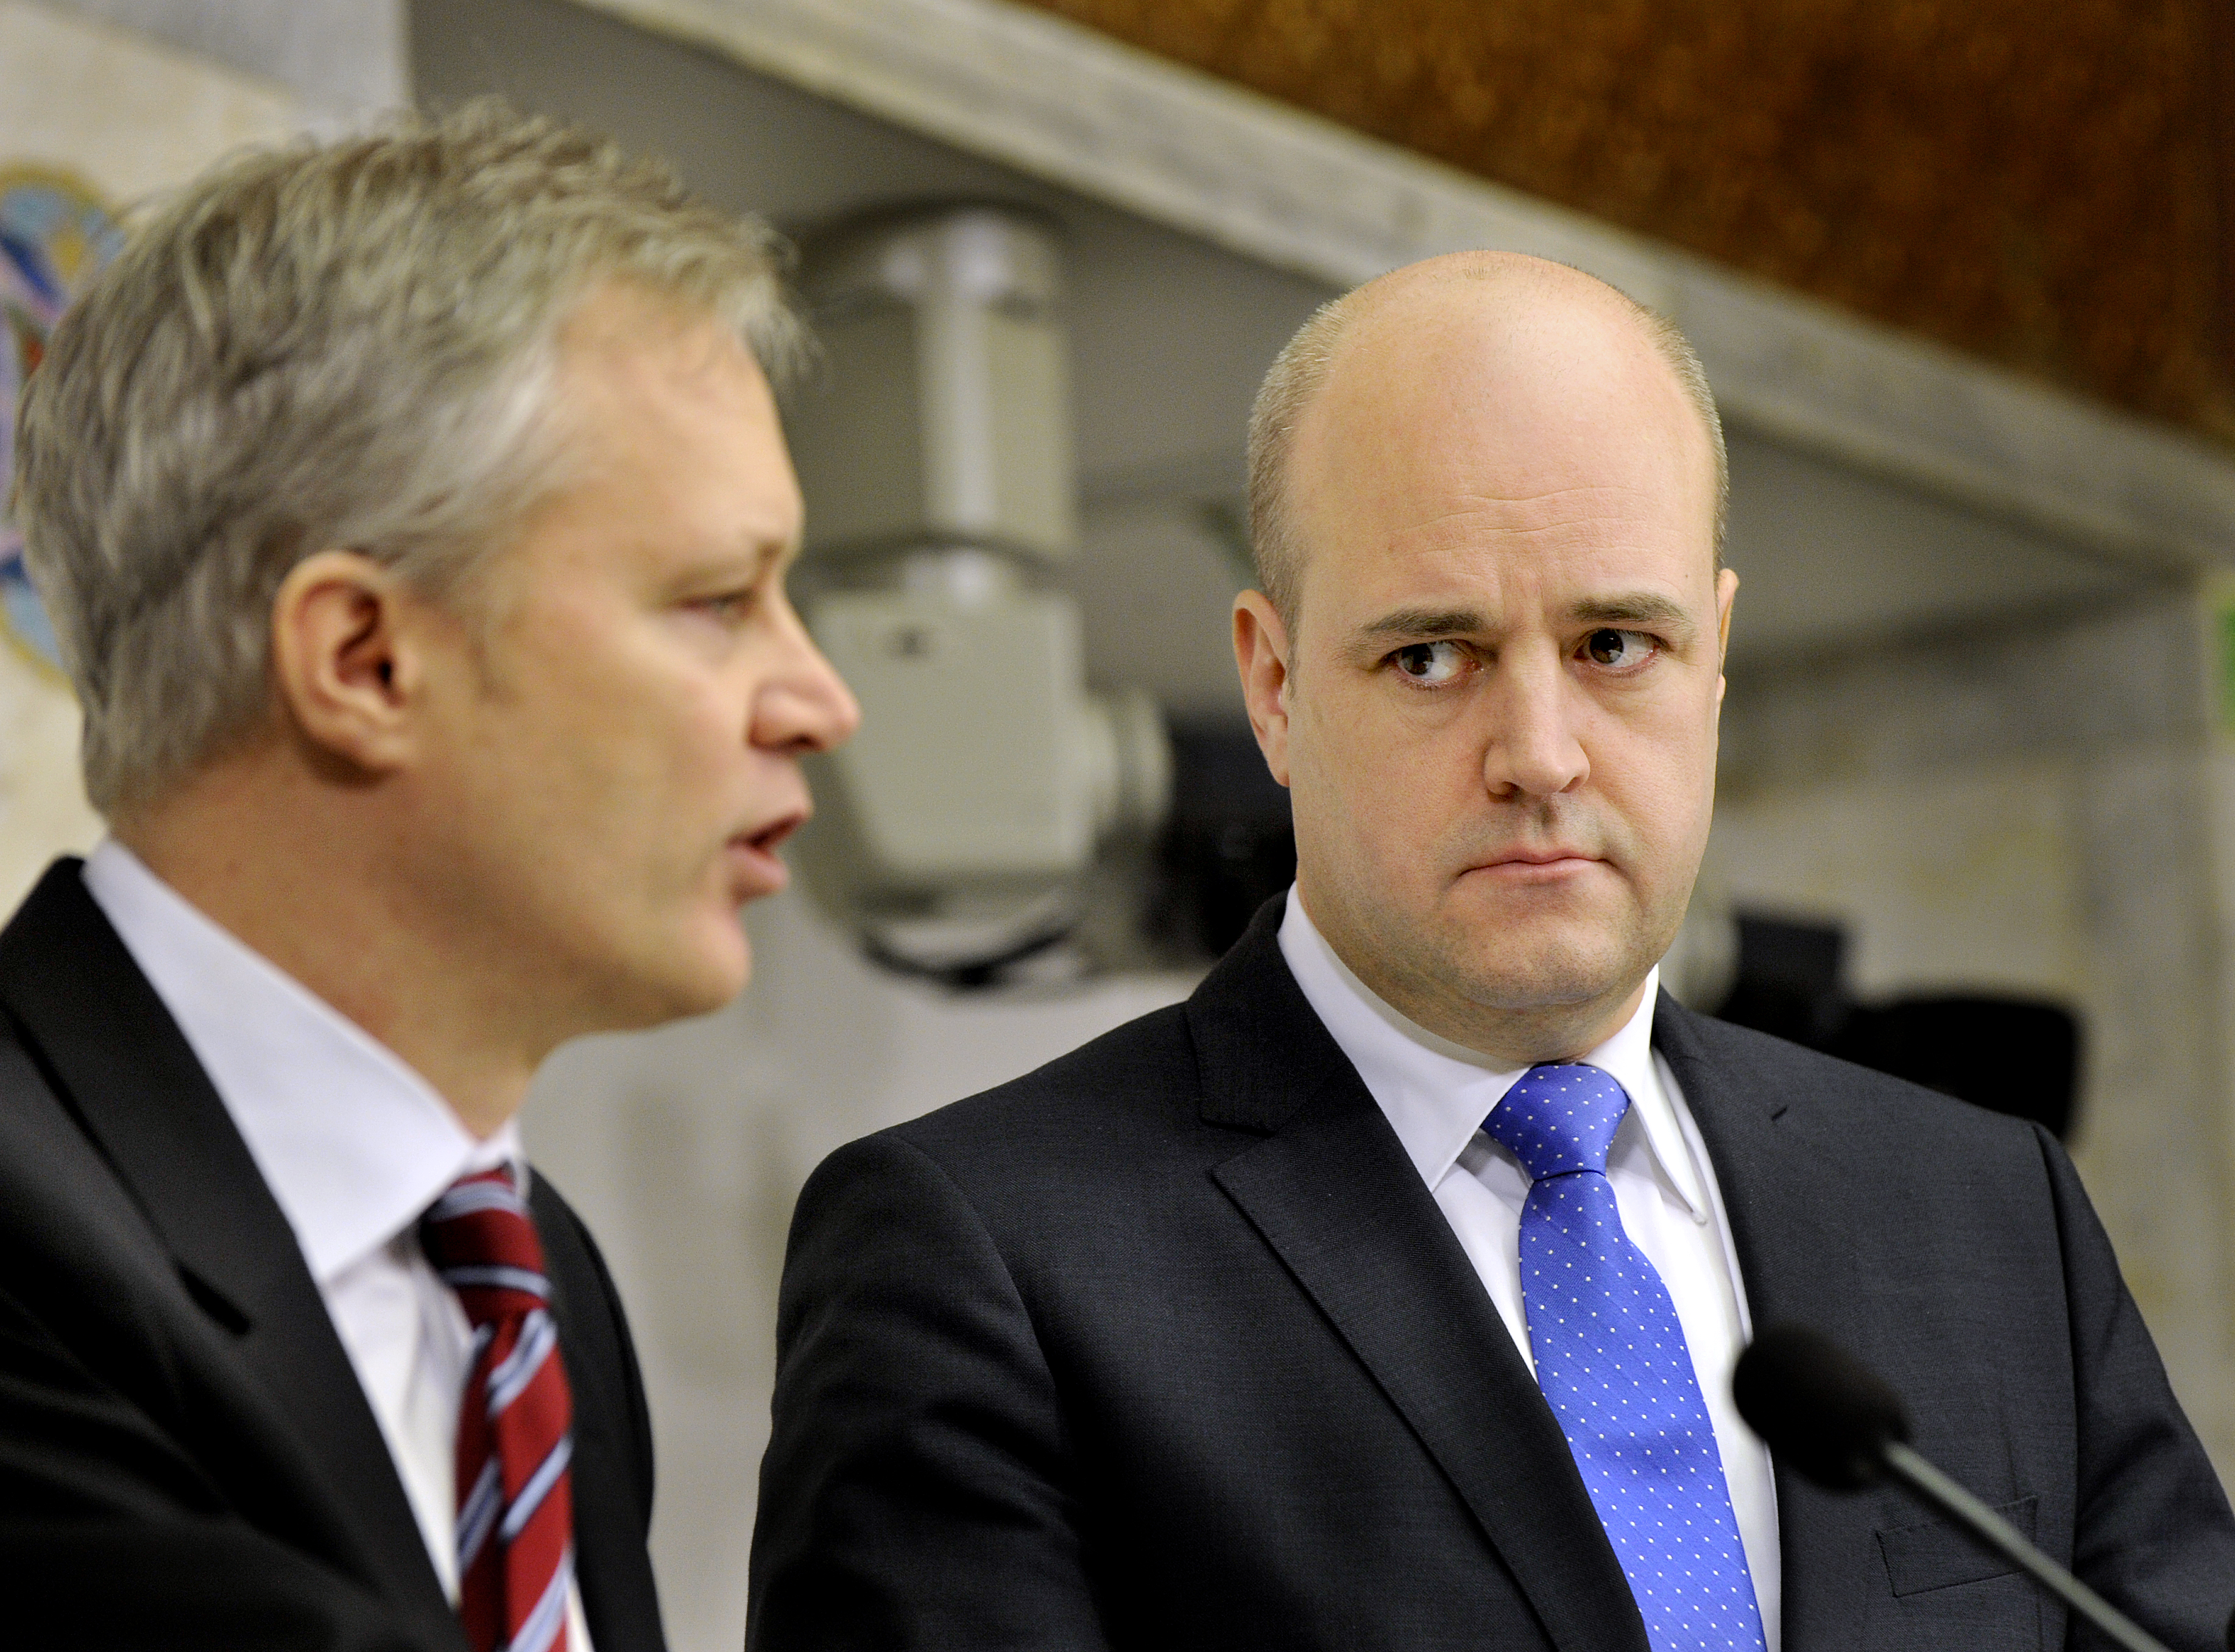 Fredrik Reinfeldts stab tog kort efter avslöjandena om Saudiarabiens avtal med Sverige över informationsflödet. Något som enligt statsvetaren Jonas Hinnefors tyder på att avgången var statsministerns beslut.